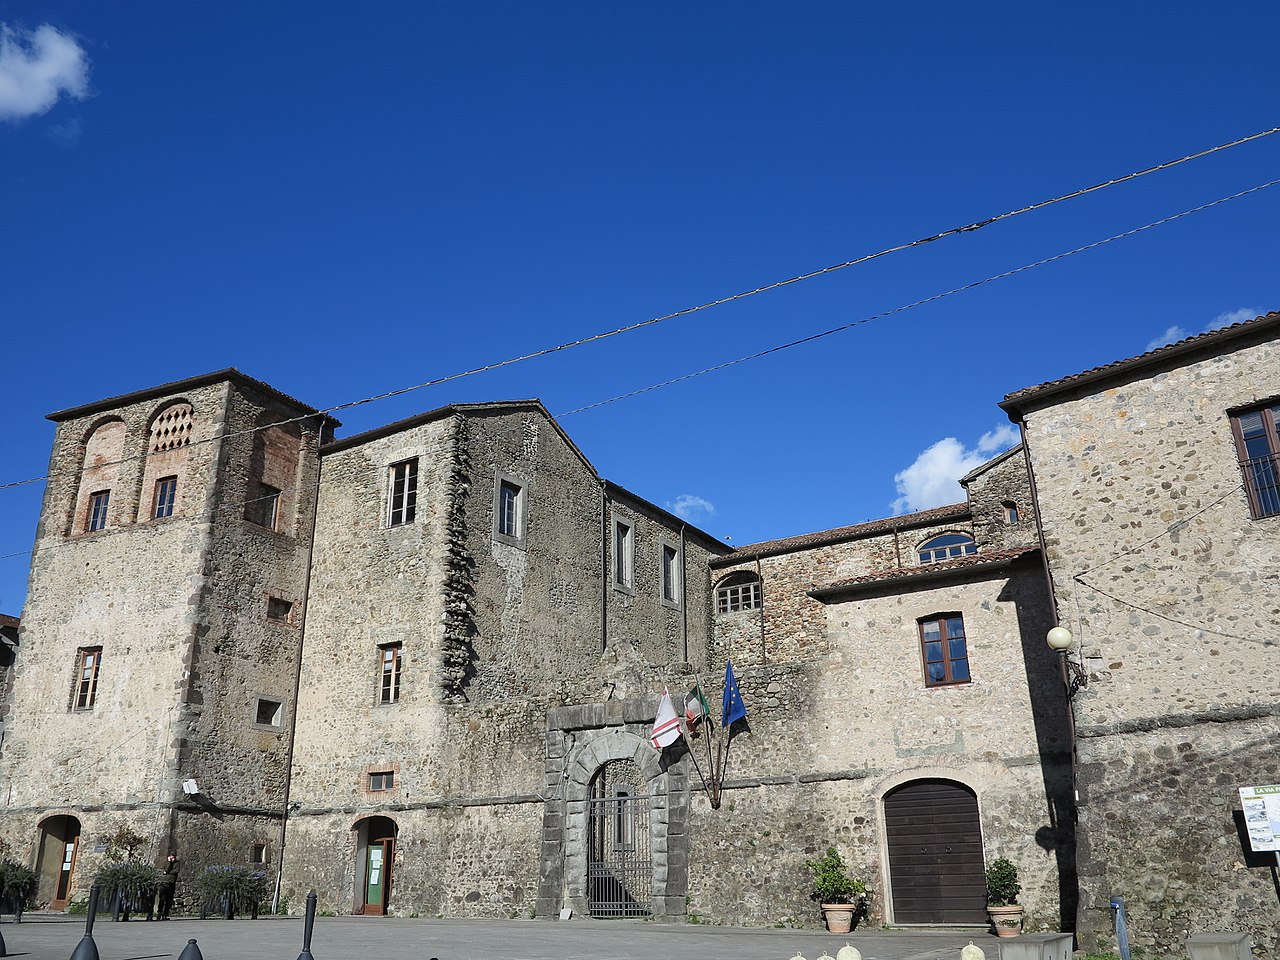 Malaspina Castle in Terrarossa